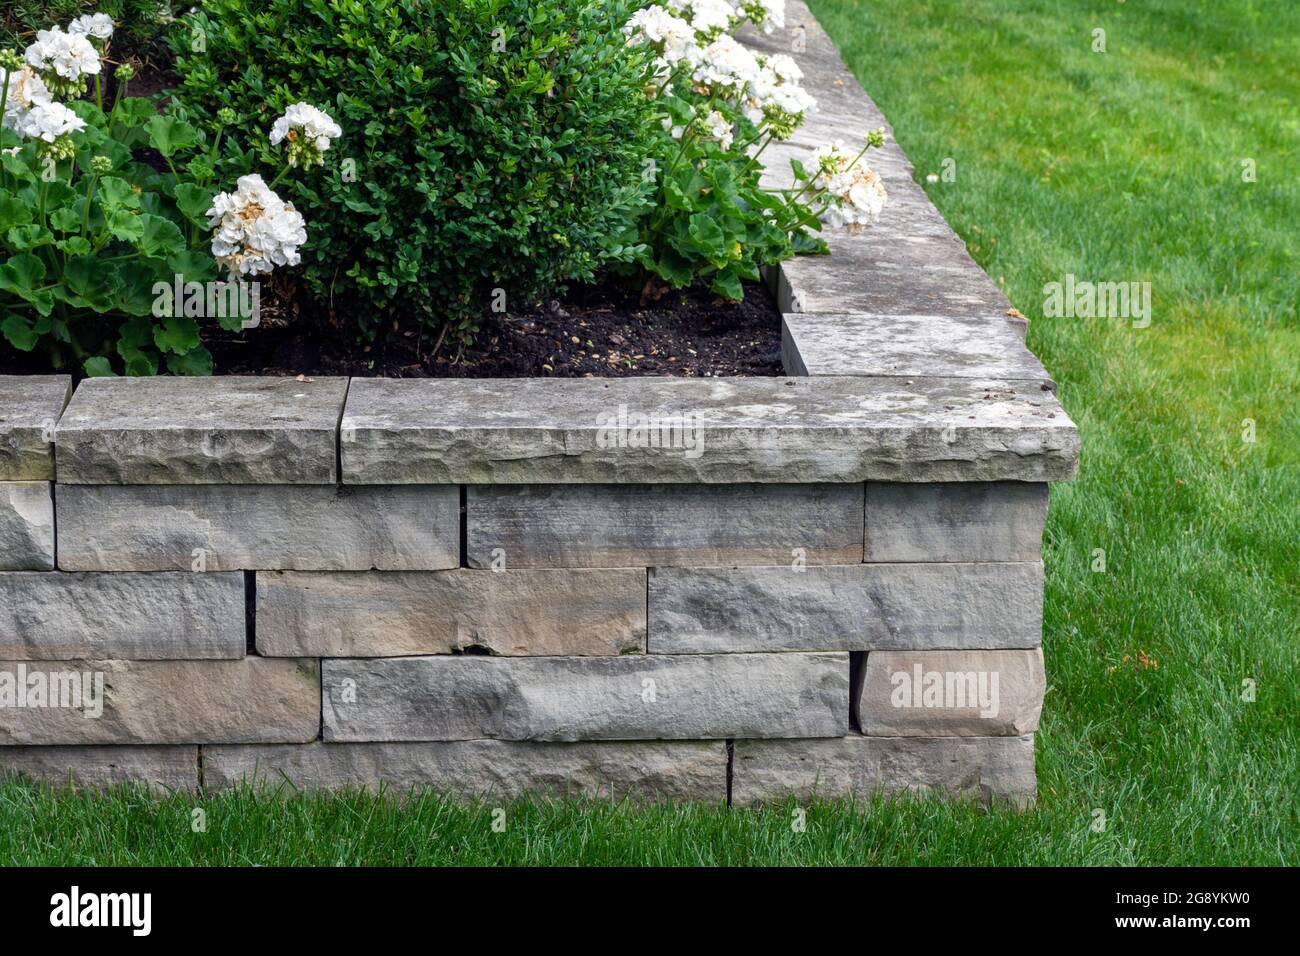 Un mur de retenue en pierre naturelle avec une portée assortie crée un lit de semoir surélevé qui a été planté avec des roses blanches. Banque D'Images